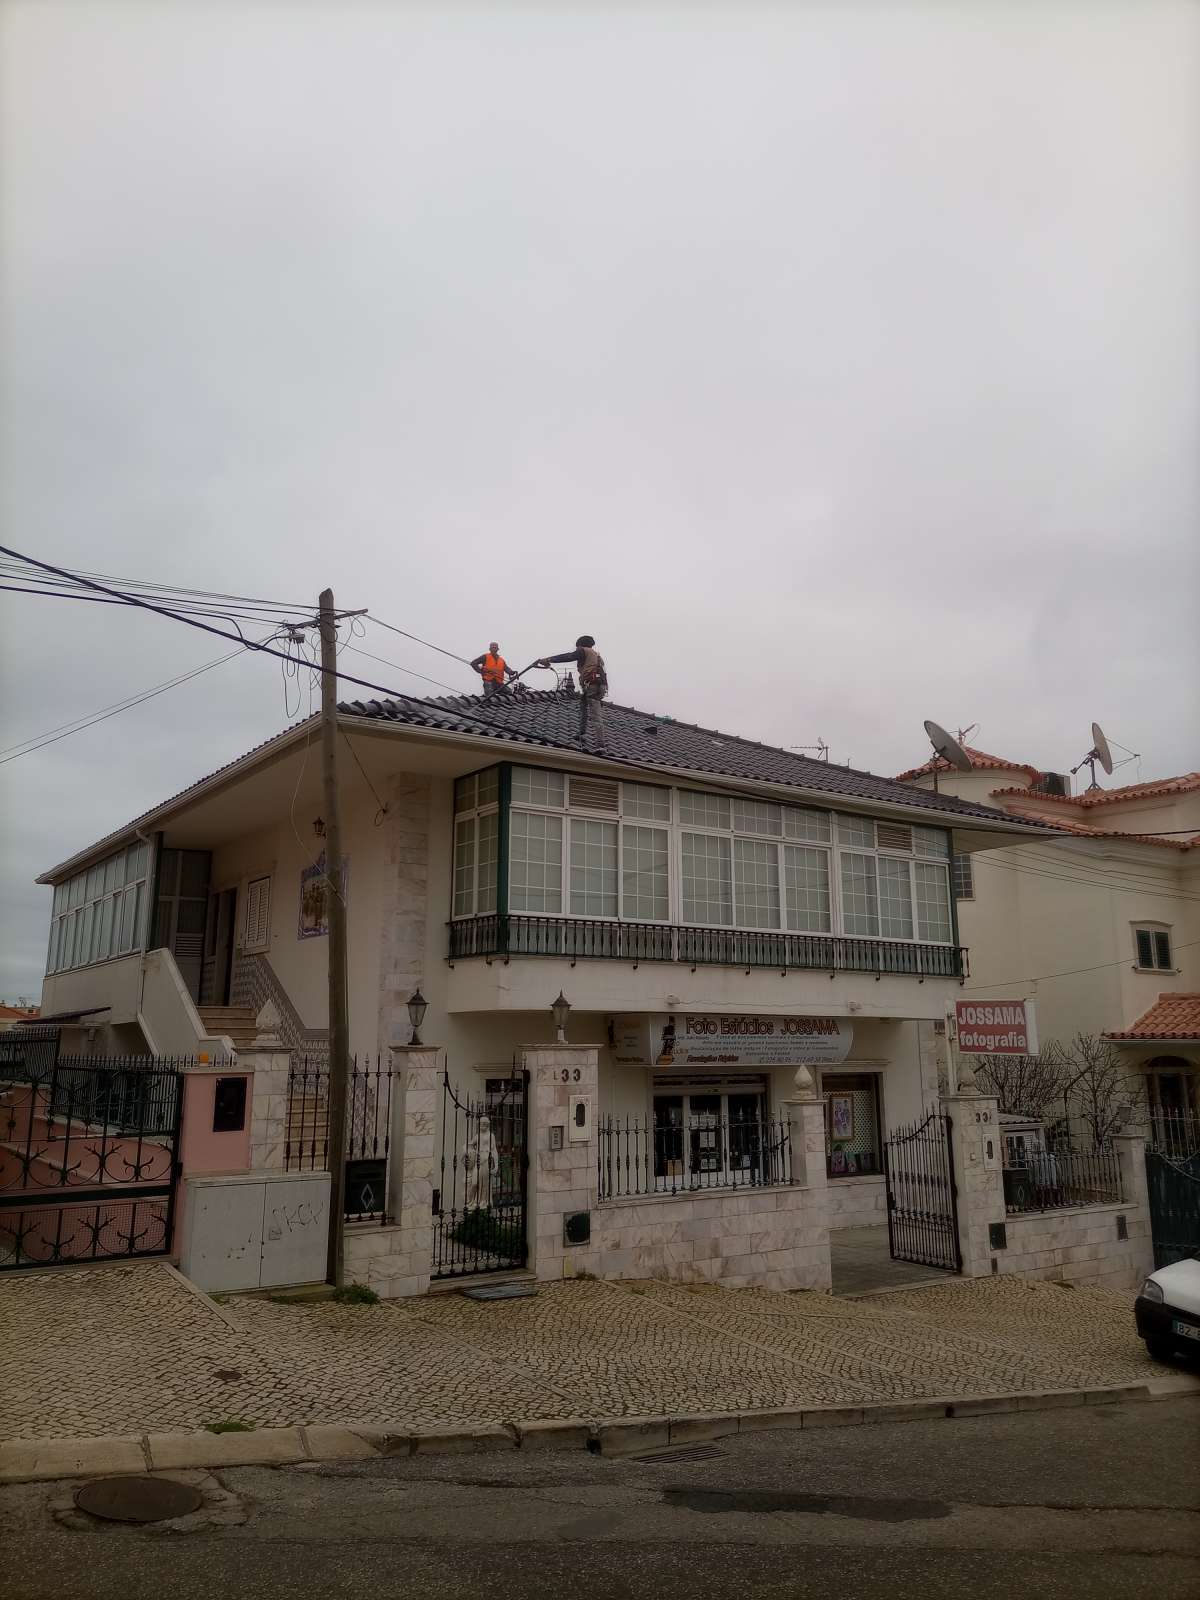 REALIZA EXCELENTE - Vila Franca de Xira - Remodelações e Construção